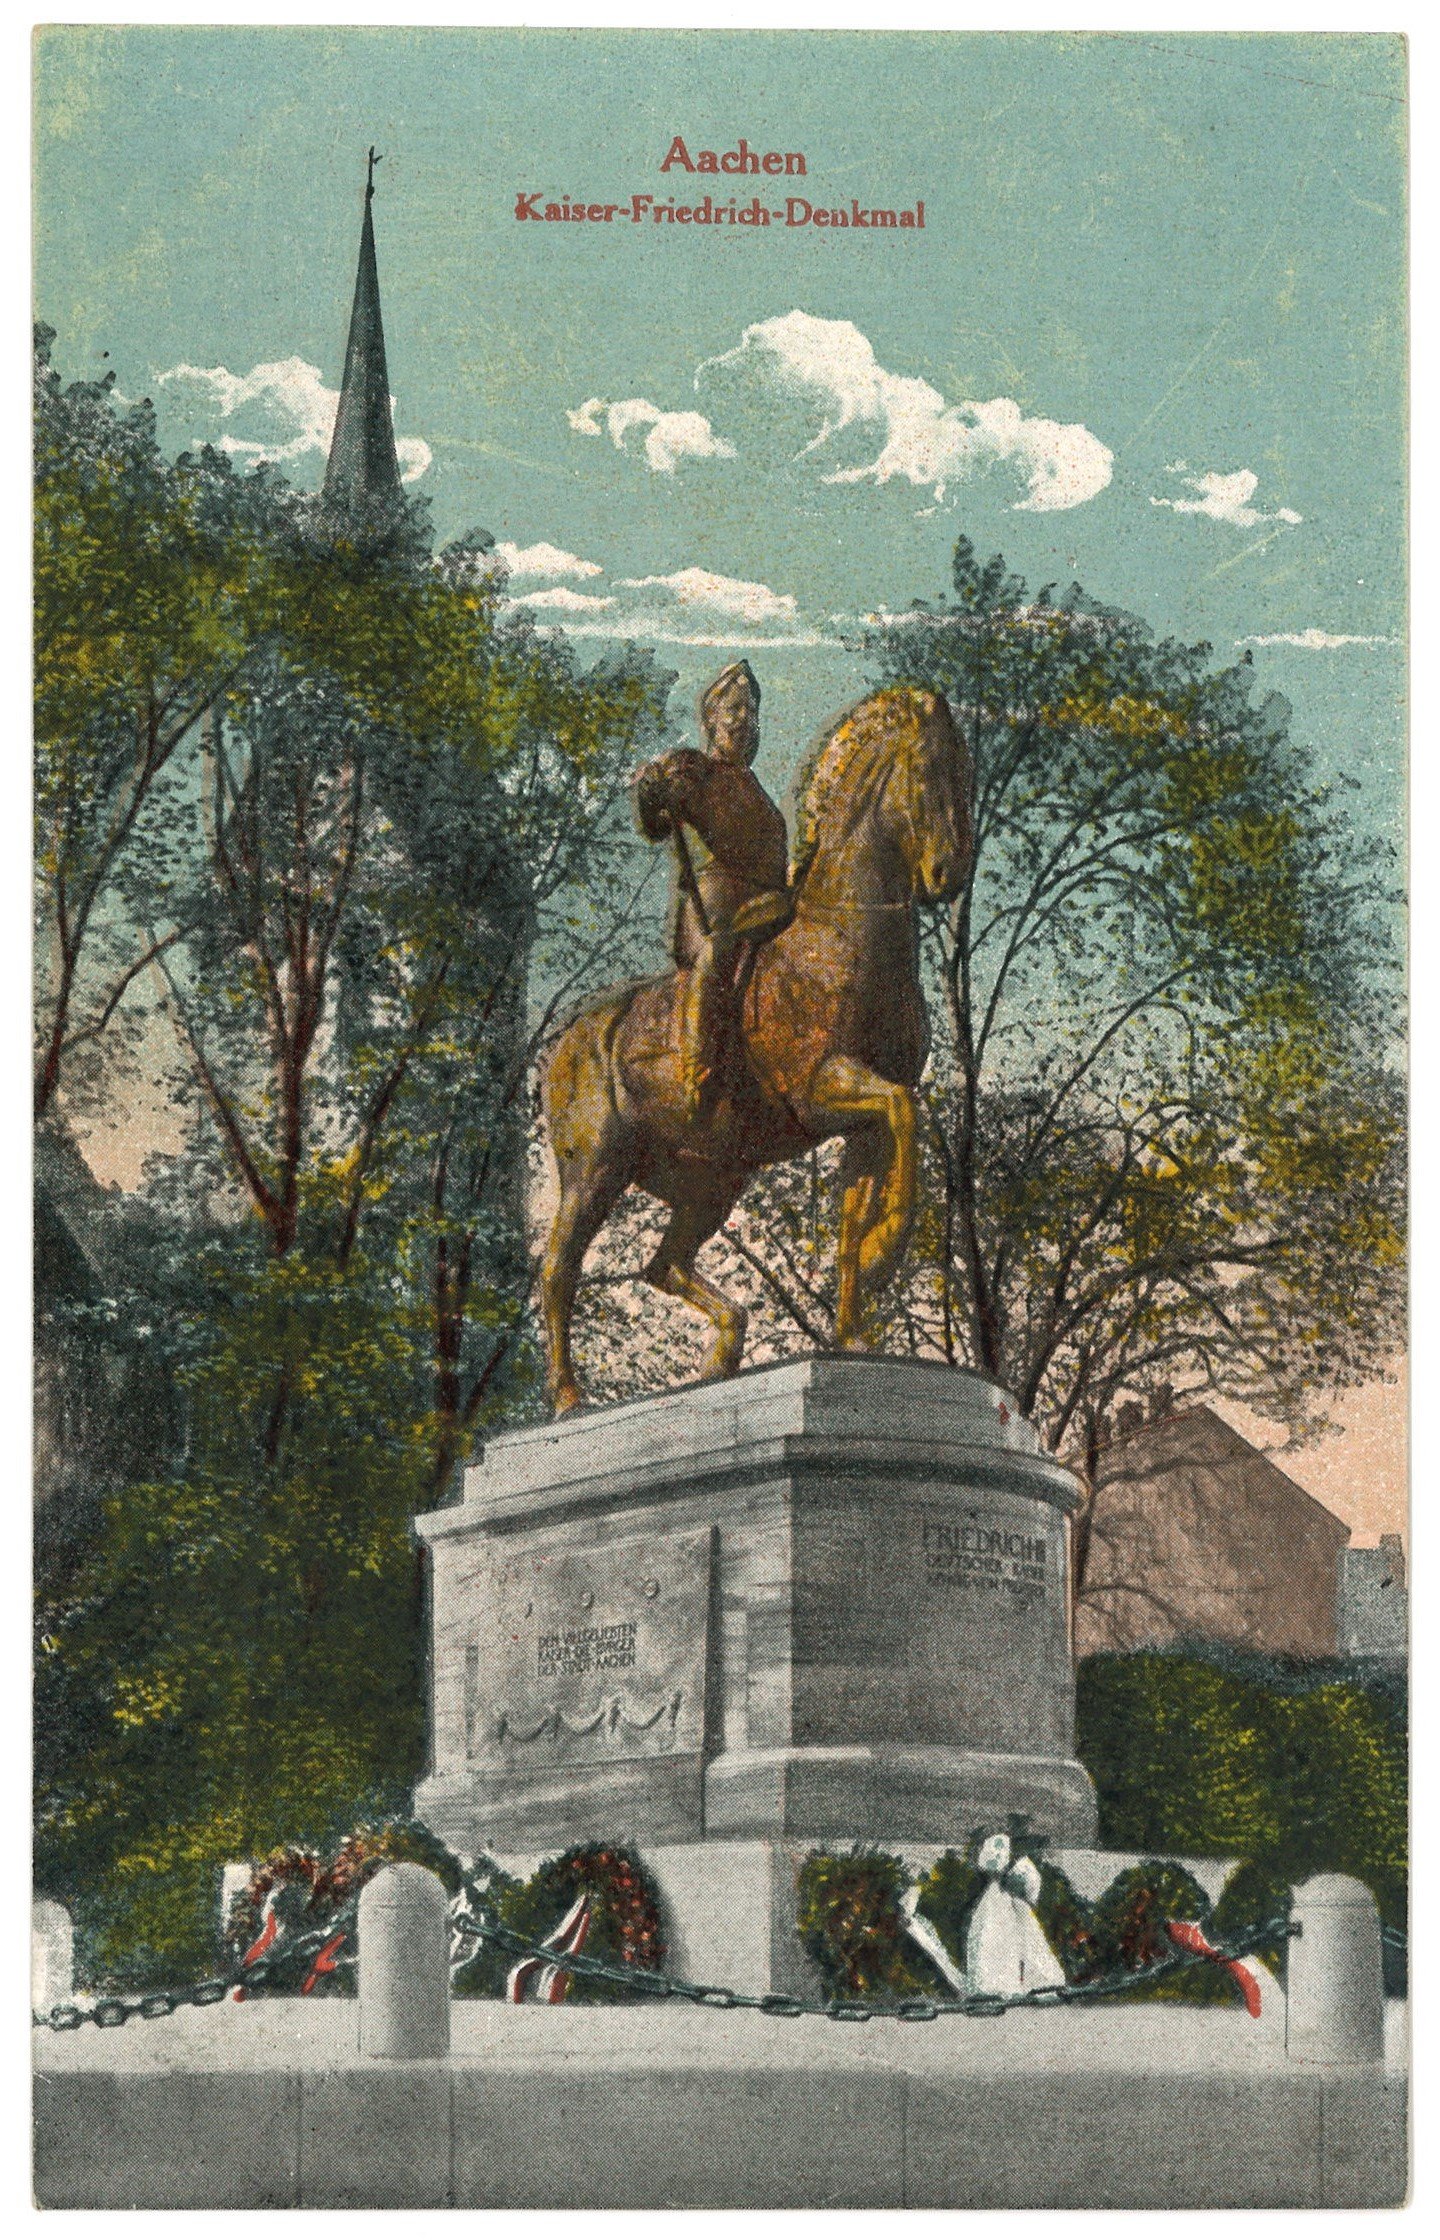 Aachen: Kaiser-Friedrich-Denkmal (Landesgeschichtliche Vereinigung für die Mark Brandenburg e.V. CC BY)